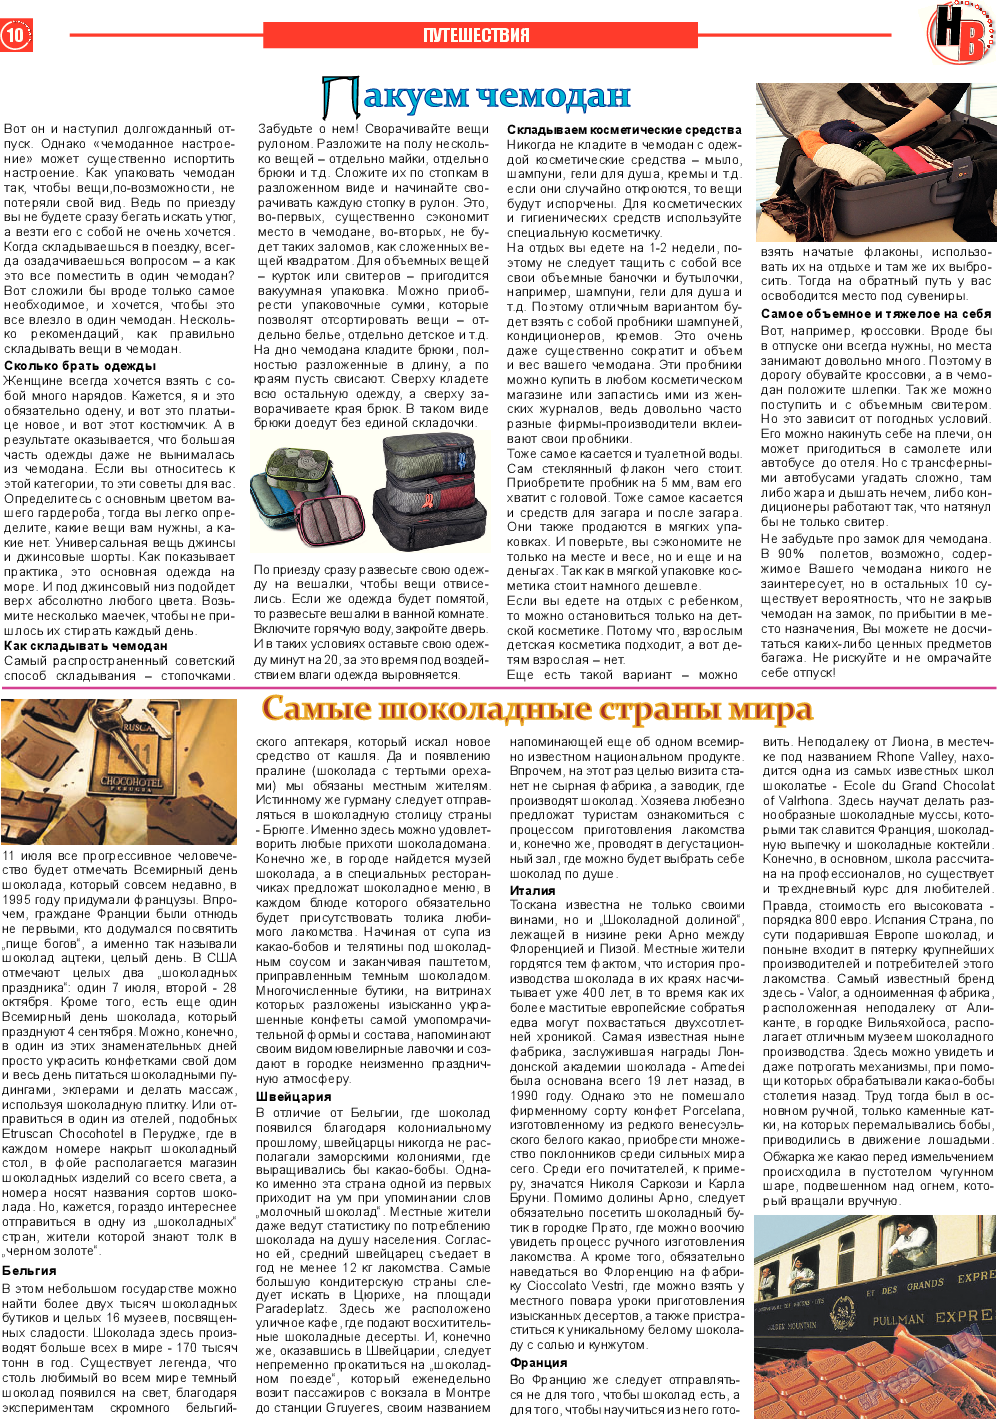 Наше время, газета. 2013 №7 стр.10